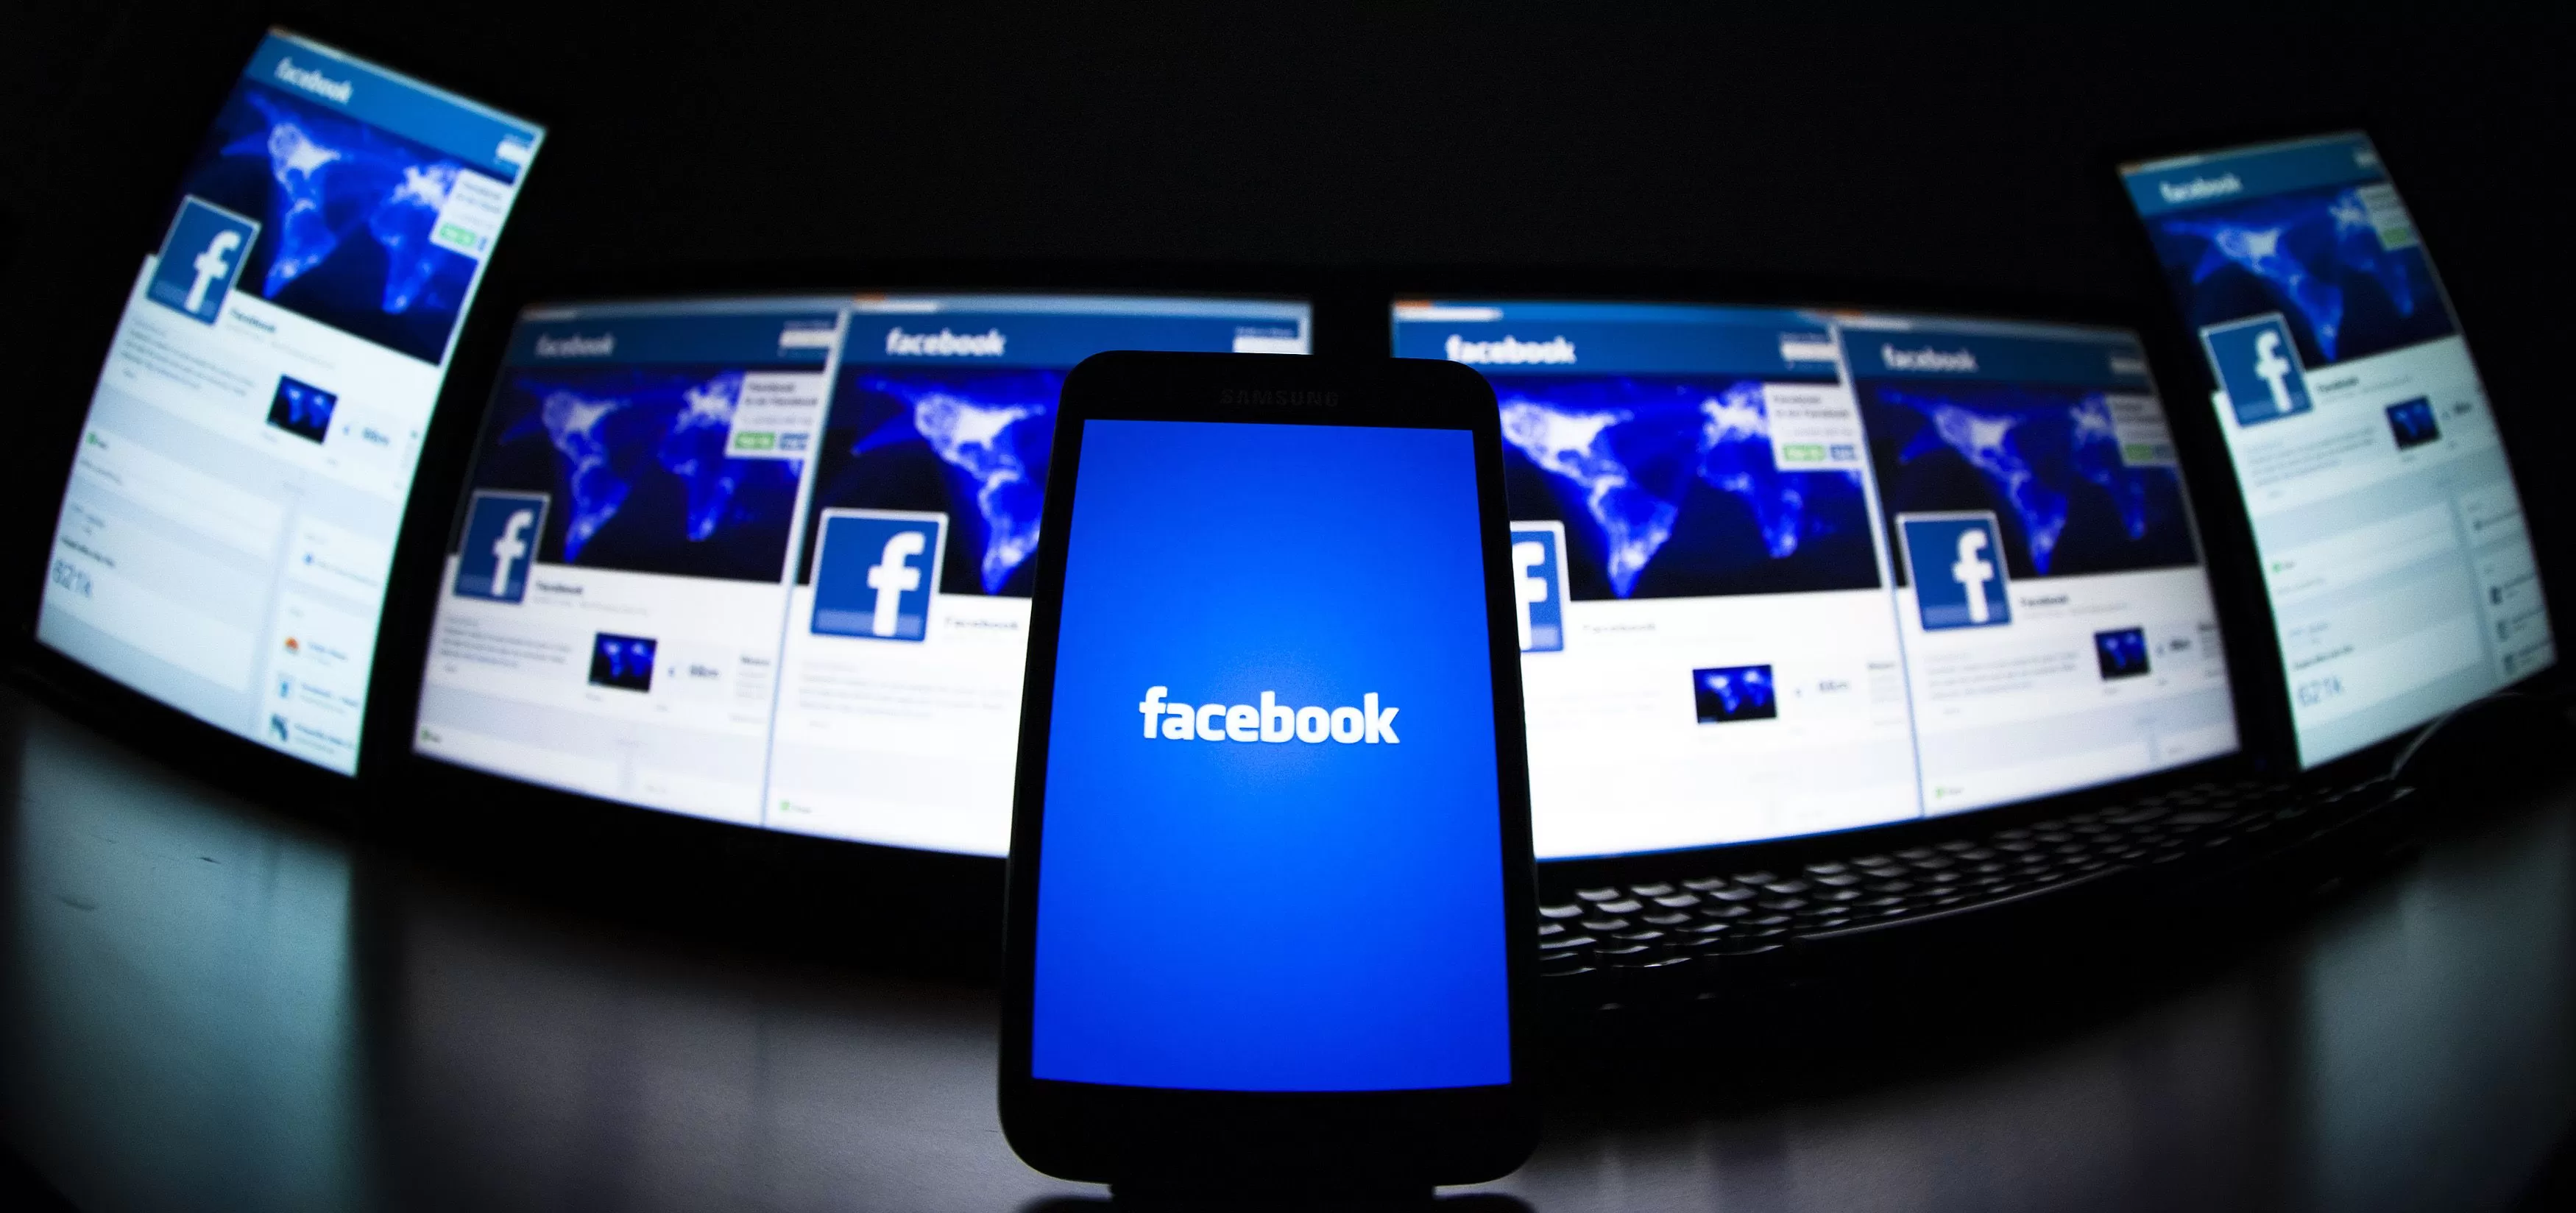 facebookkomando2 | Ads | [ข่าว] Facebook จะเริ่มให้ผู้เผยแพร่โพสต์เนื้อหาแบบเต็มผ่าน Facebook โดยที่ไม่ต้องกดลิ้งค์ไปเว็บภายนอก